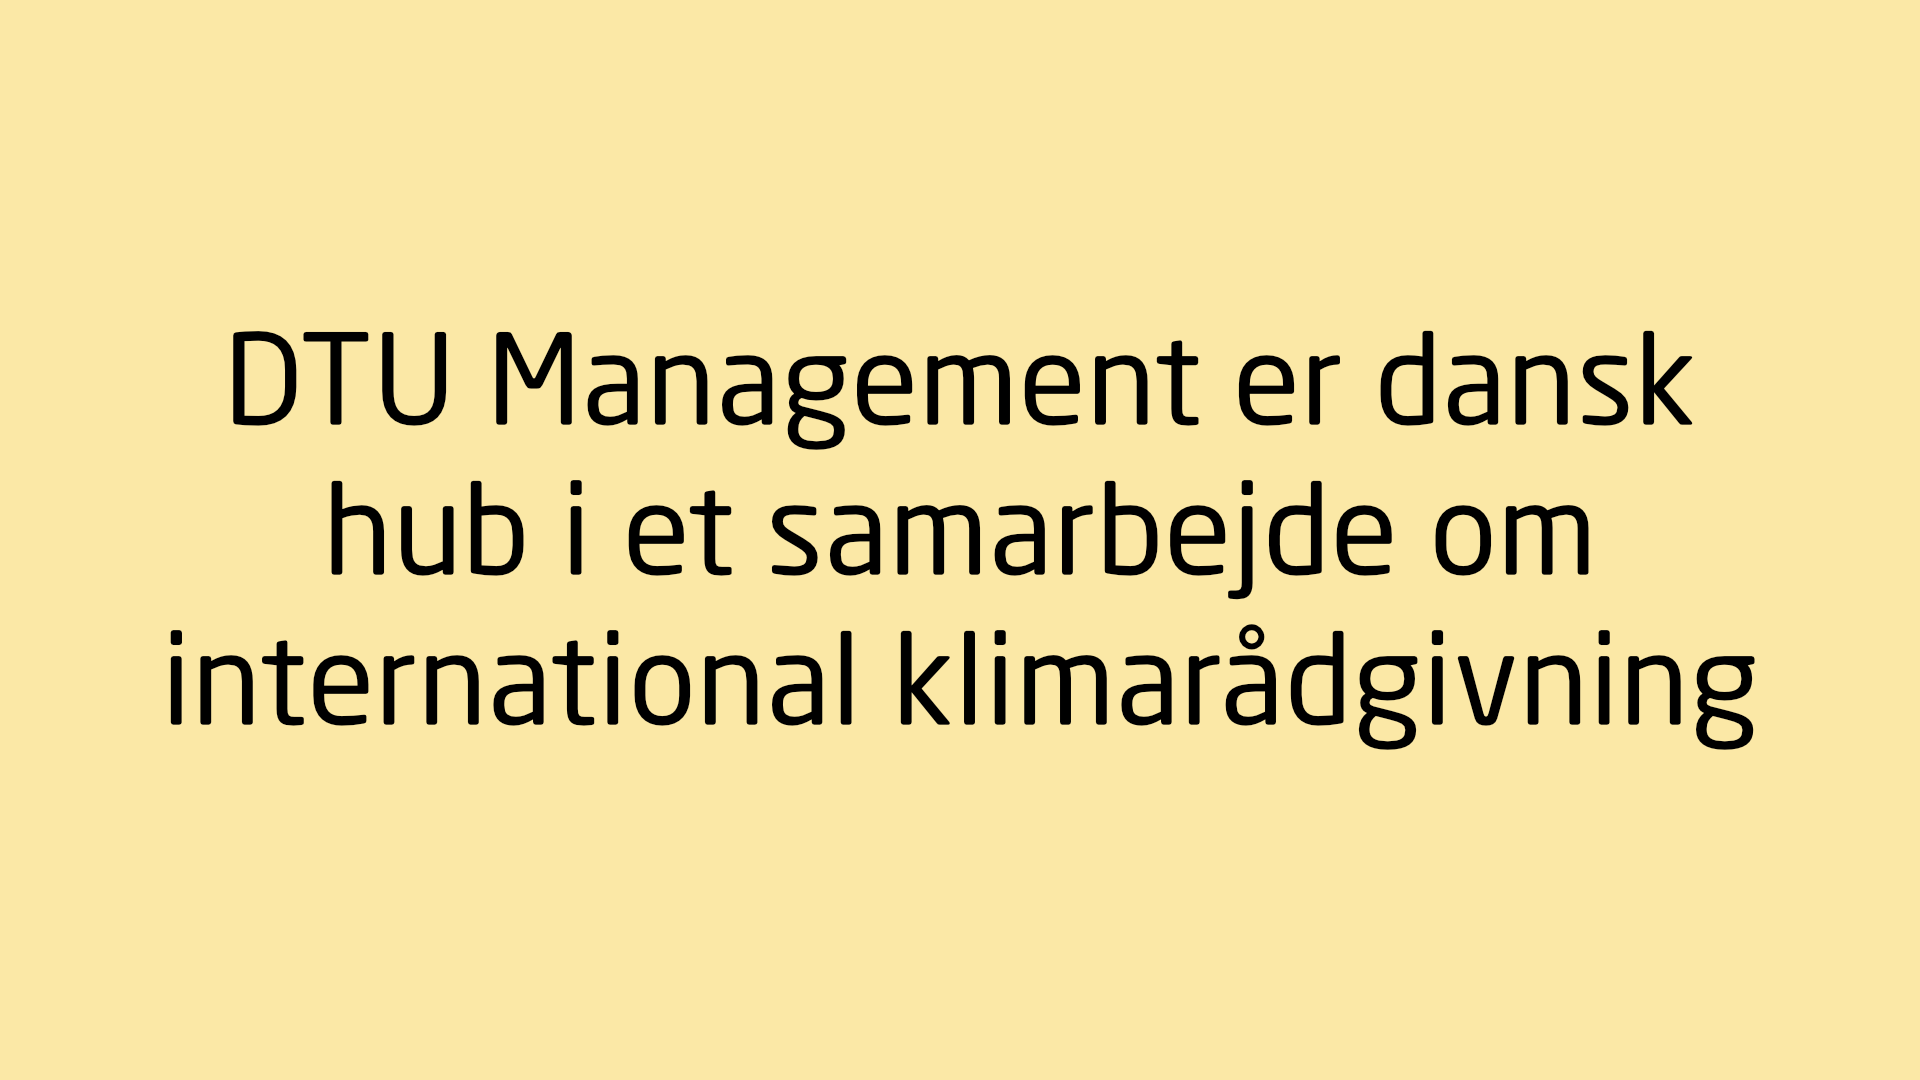 DTU Management er dansk hub i et samarbejde om international klimarådgivning